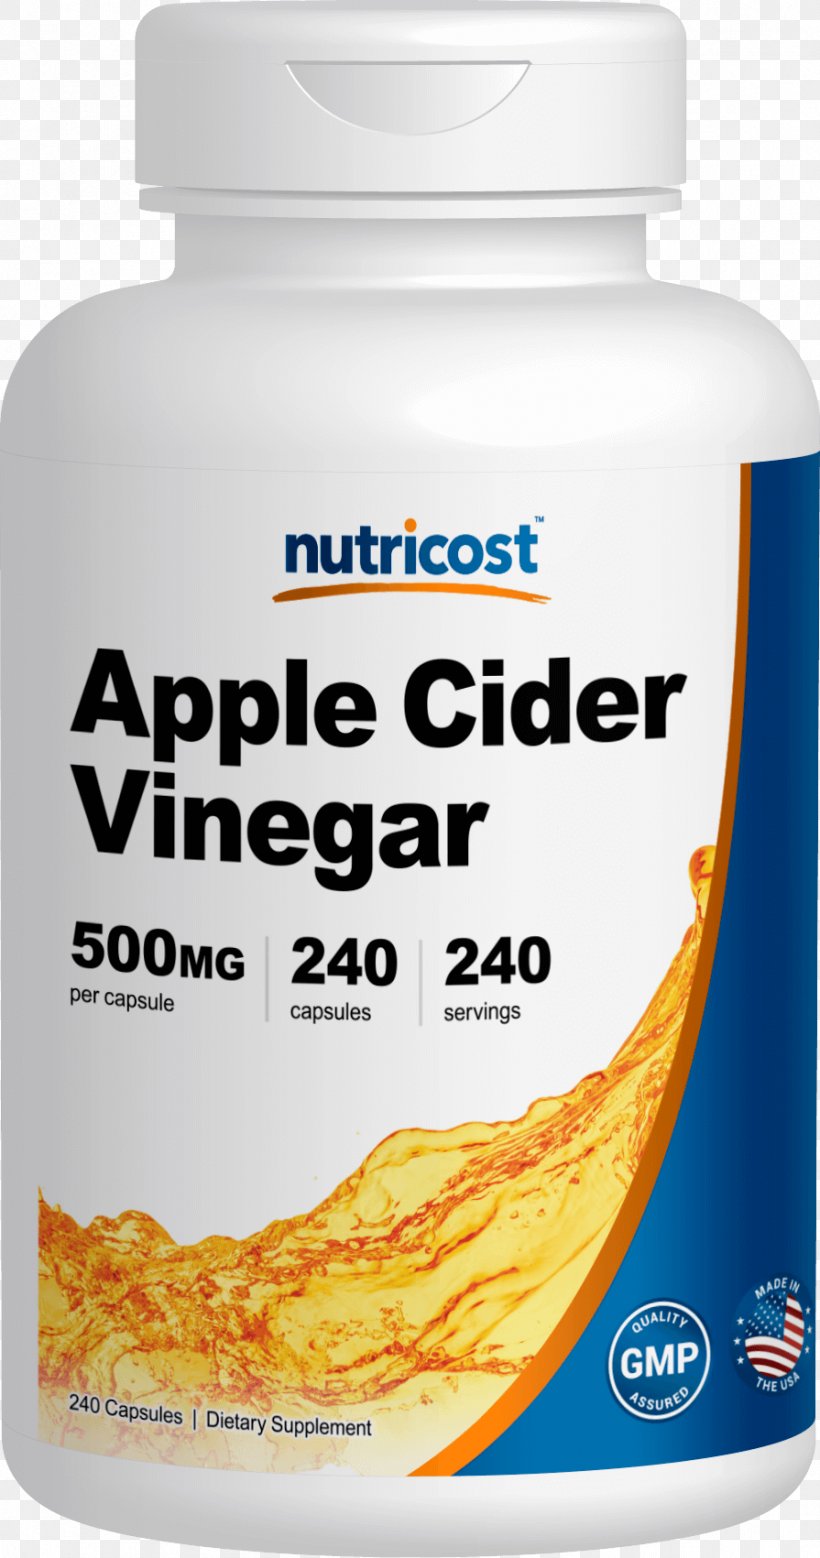 Apple Cider Vinegar Vegetarian Cuisine, PNG, 895x1701px, Apple Cider, Apple, Apple Cider Vinegar, Bottle, Capsule Download Free